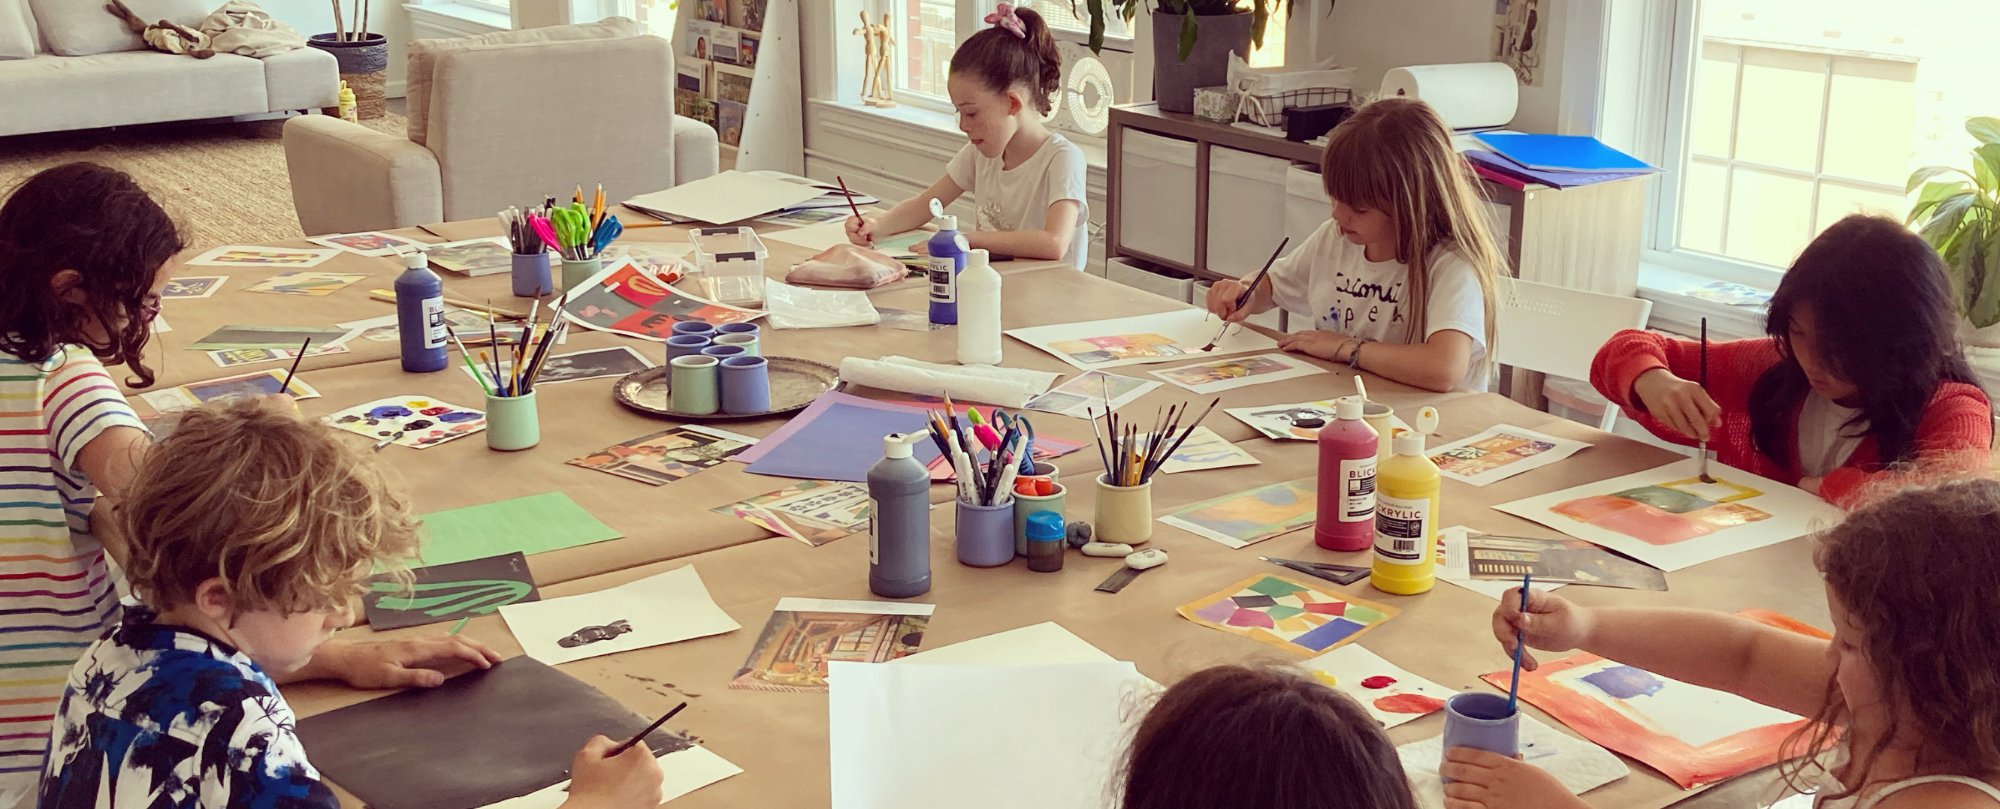 ART STUDIO FOR KIDS (age 8-12) — K.OSS CONTEMPORARY ART